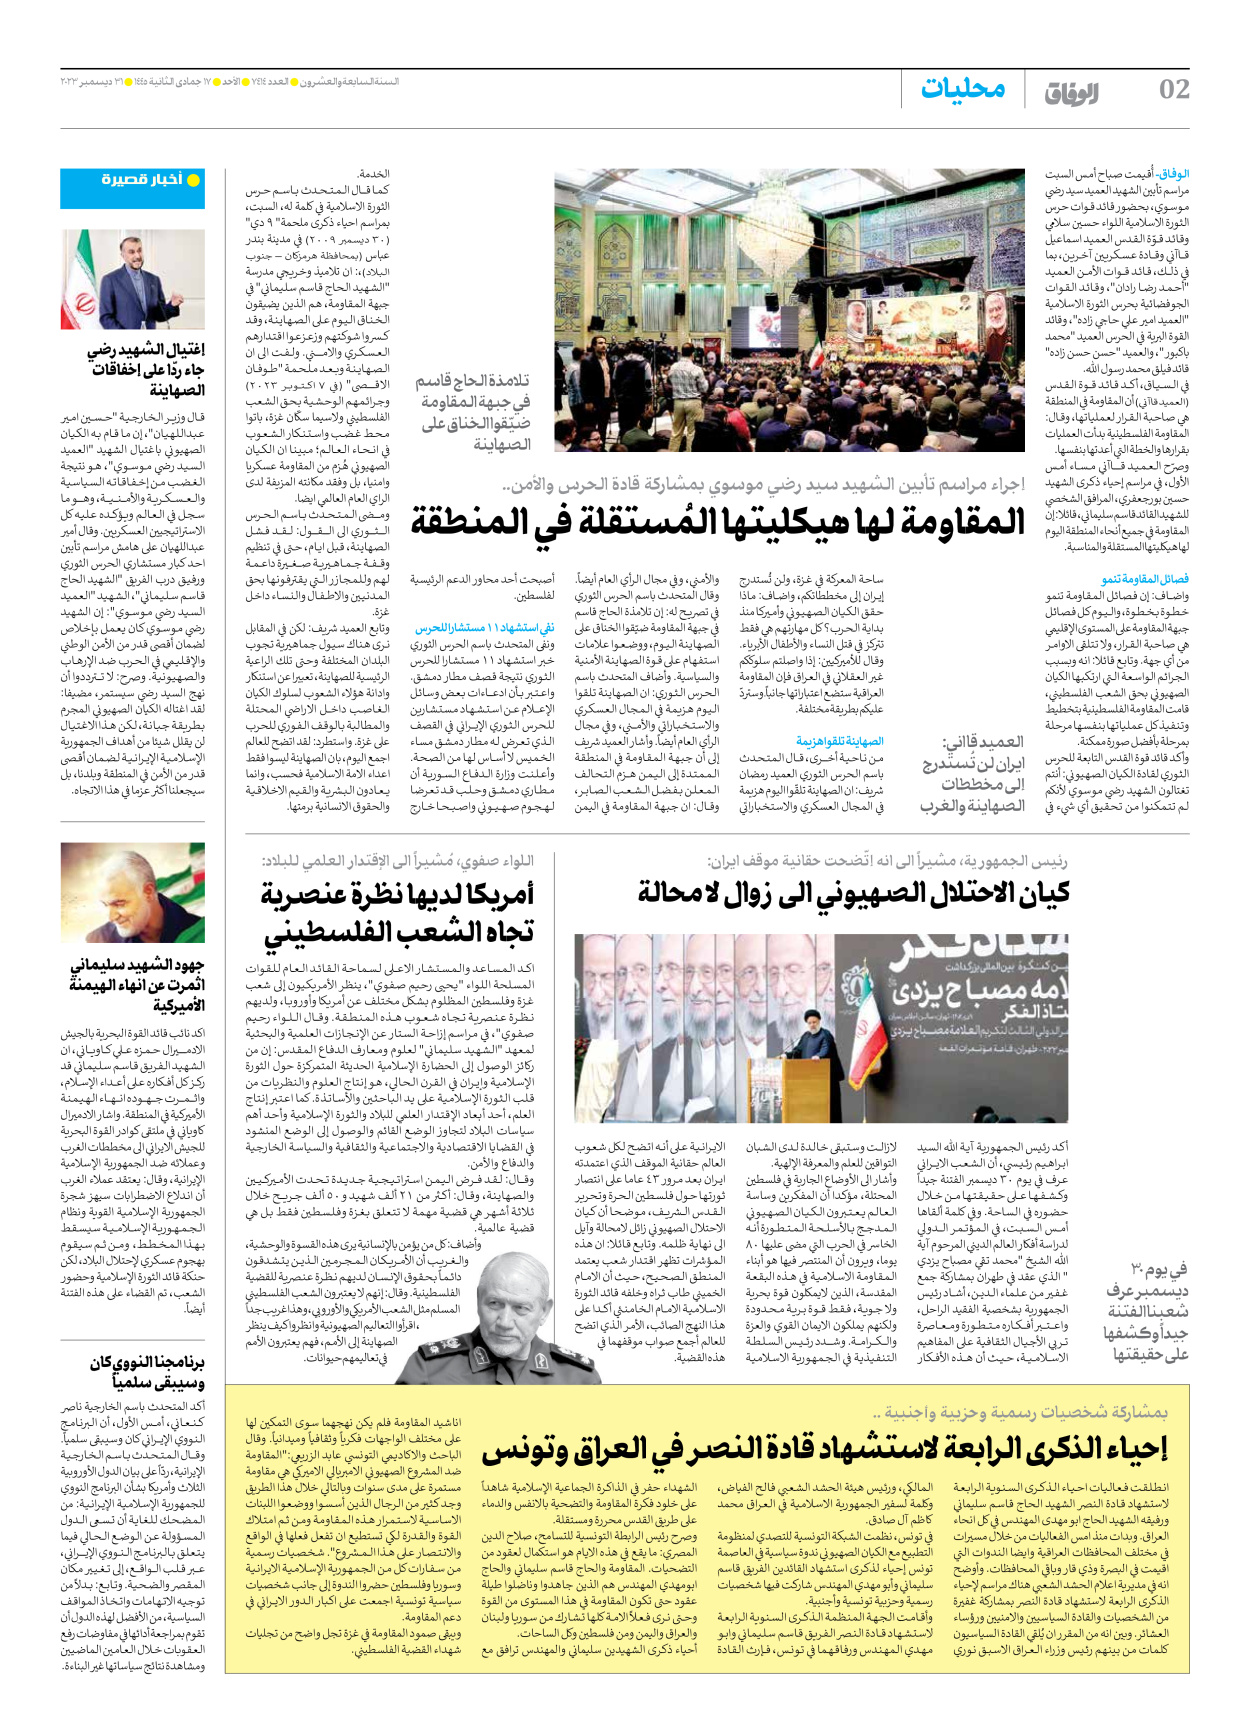 صحیفة ایران الدولیة الوفاق - العدد سبعة آلاف وأربعمائة وأربعة عشر - ٣١ ديسمبر ٢٠٢٣ - الصفحة ۲